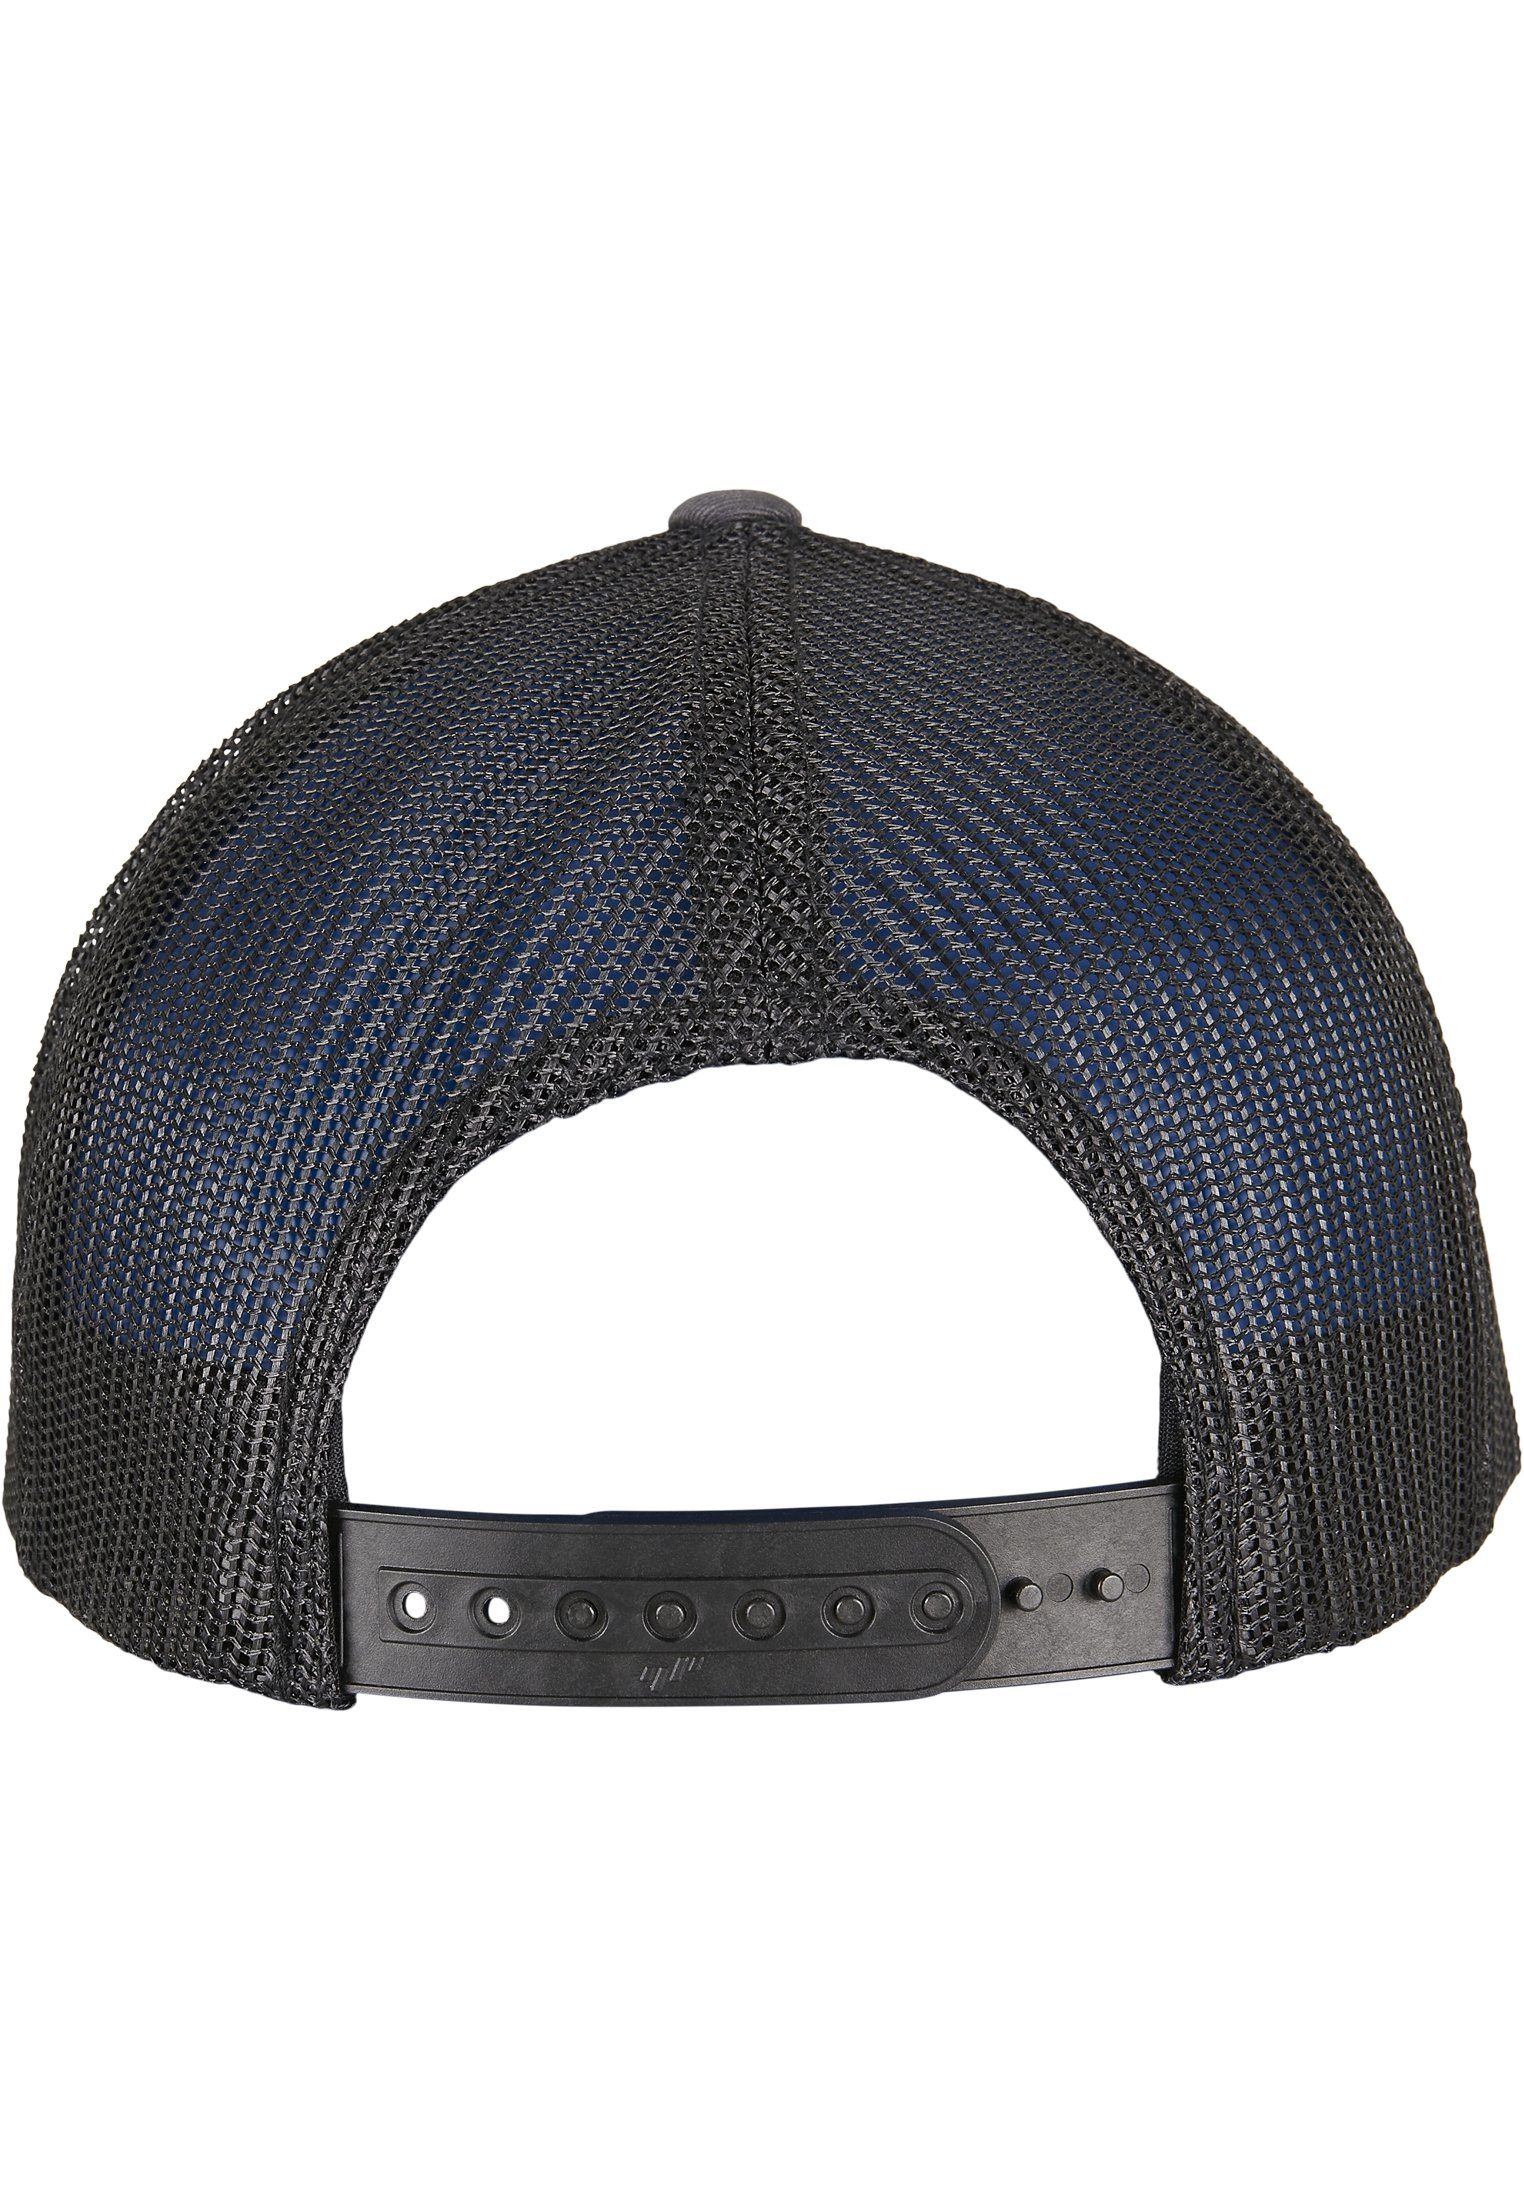 2-TONE Cap Flex Caps CAP CLASSICS charcoal/black TRUCKER RETRO RECYCLED YP Flexfit